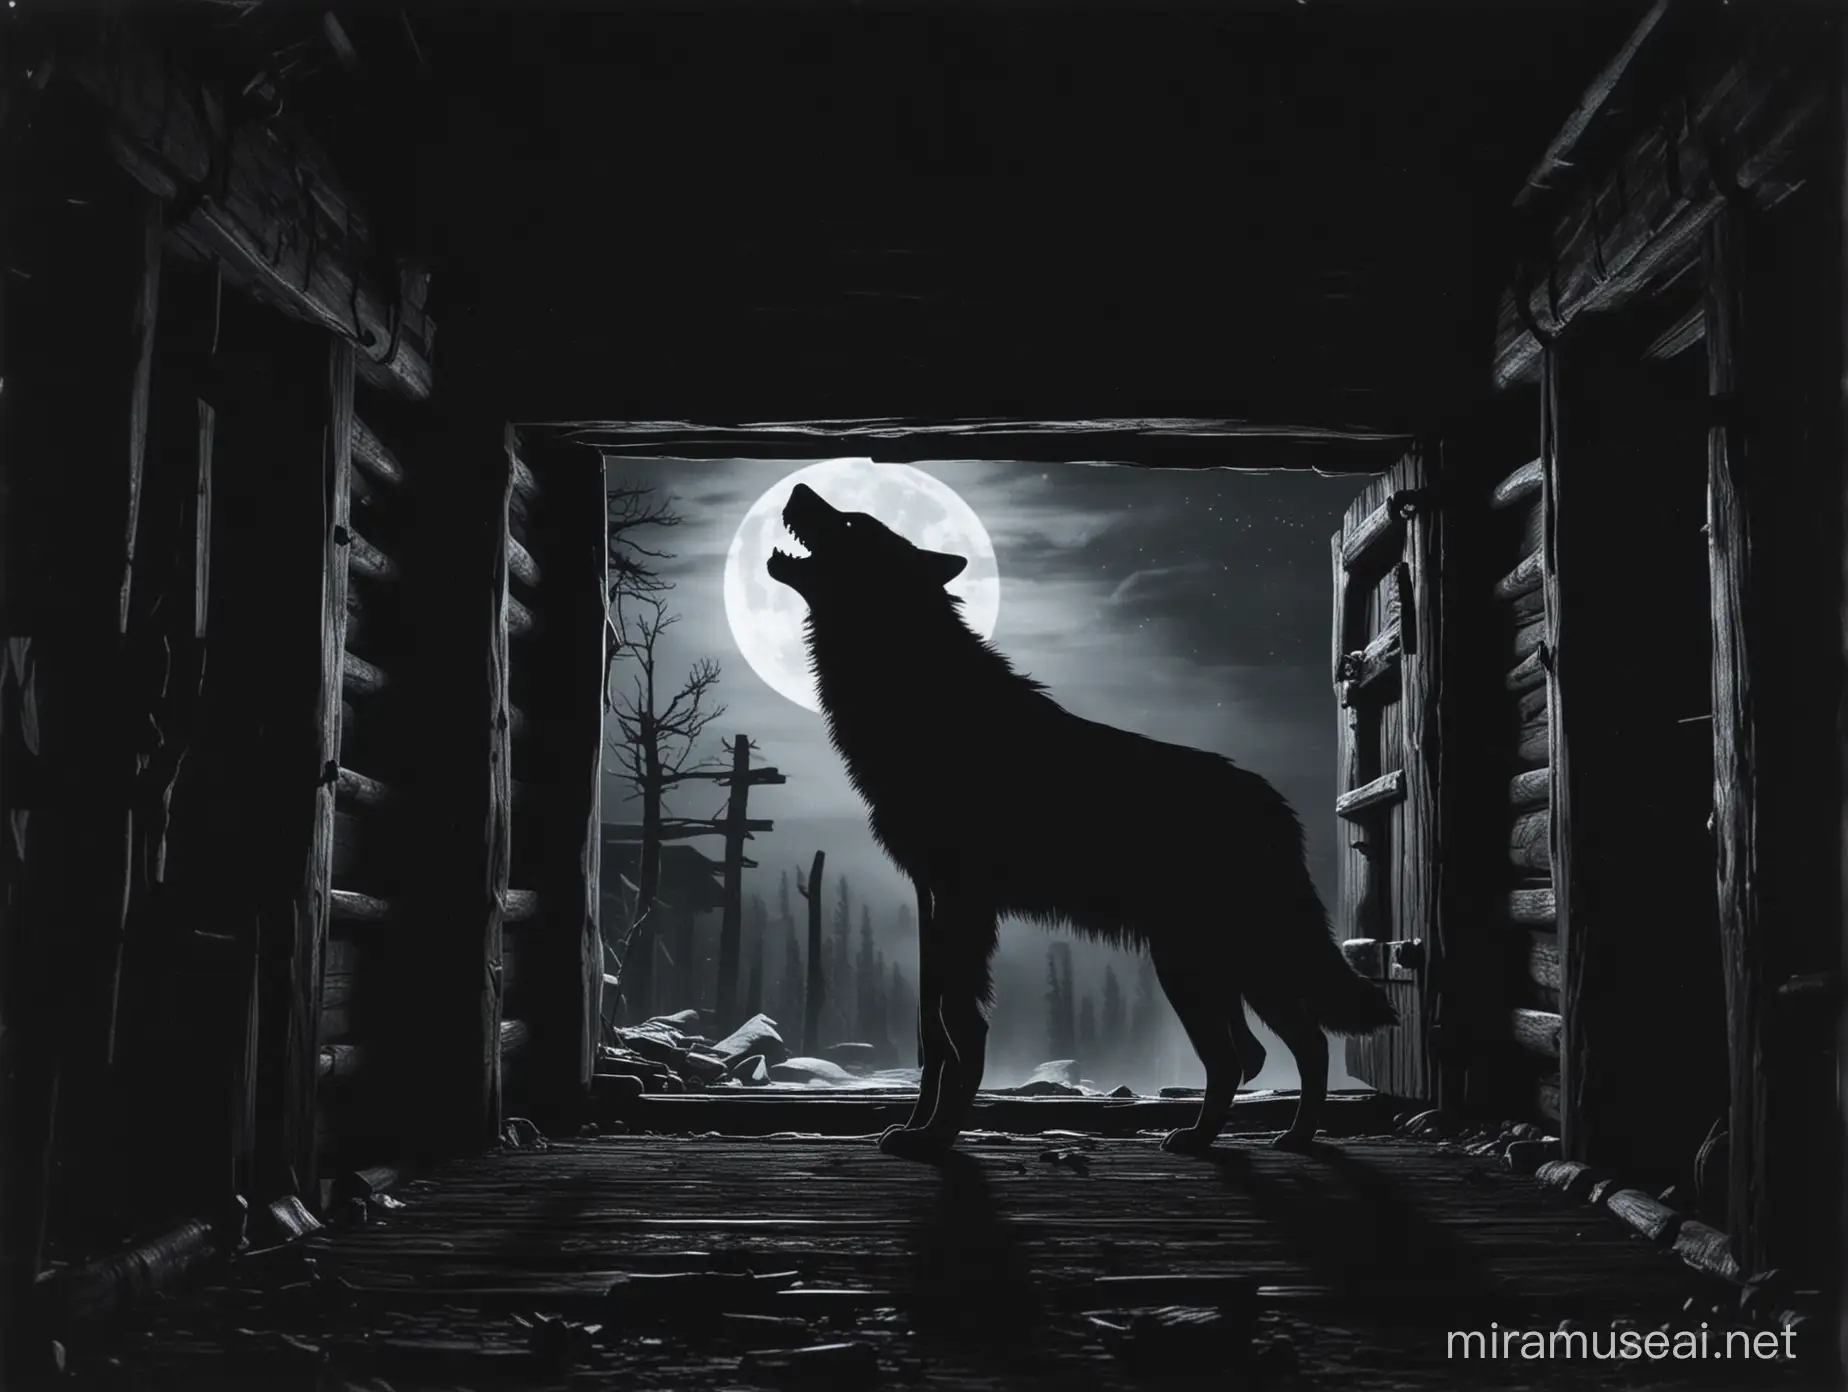 Silueta de un lobo feroz enorme aullando dentro de una cabaña antigua y oscura por la noche